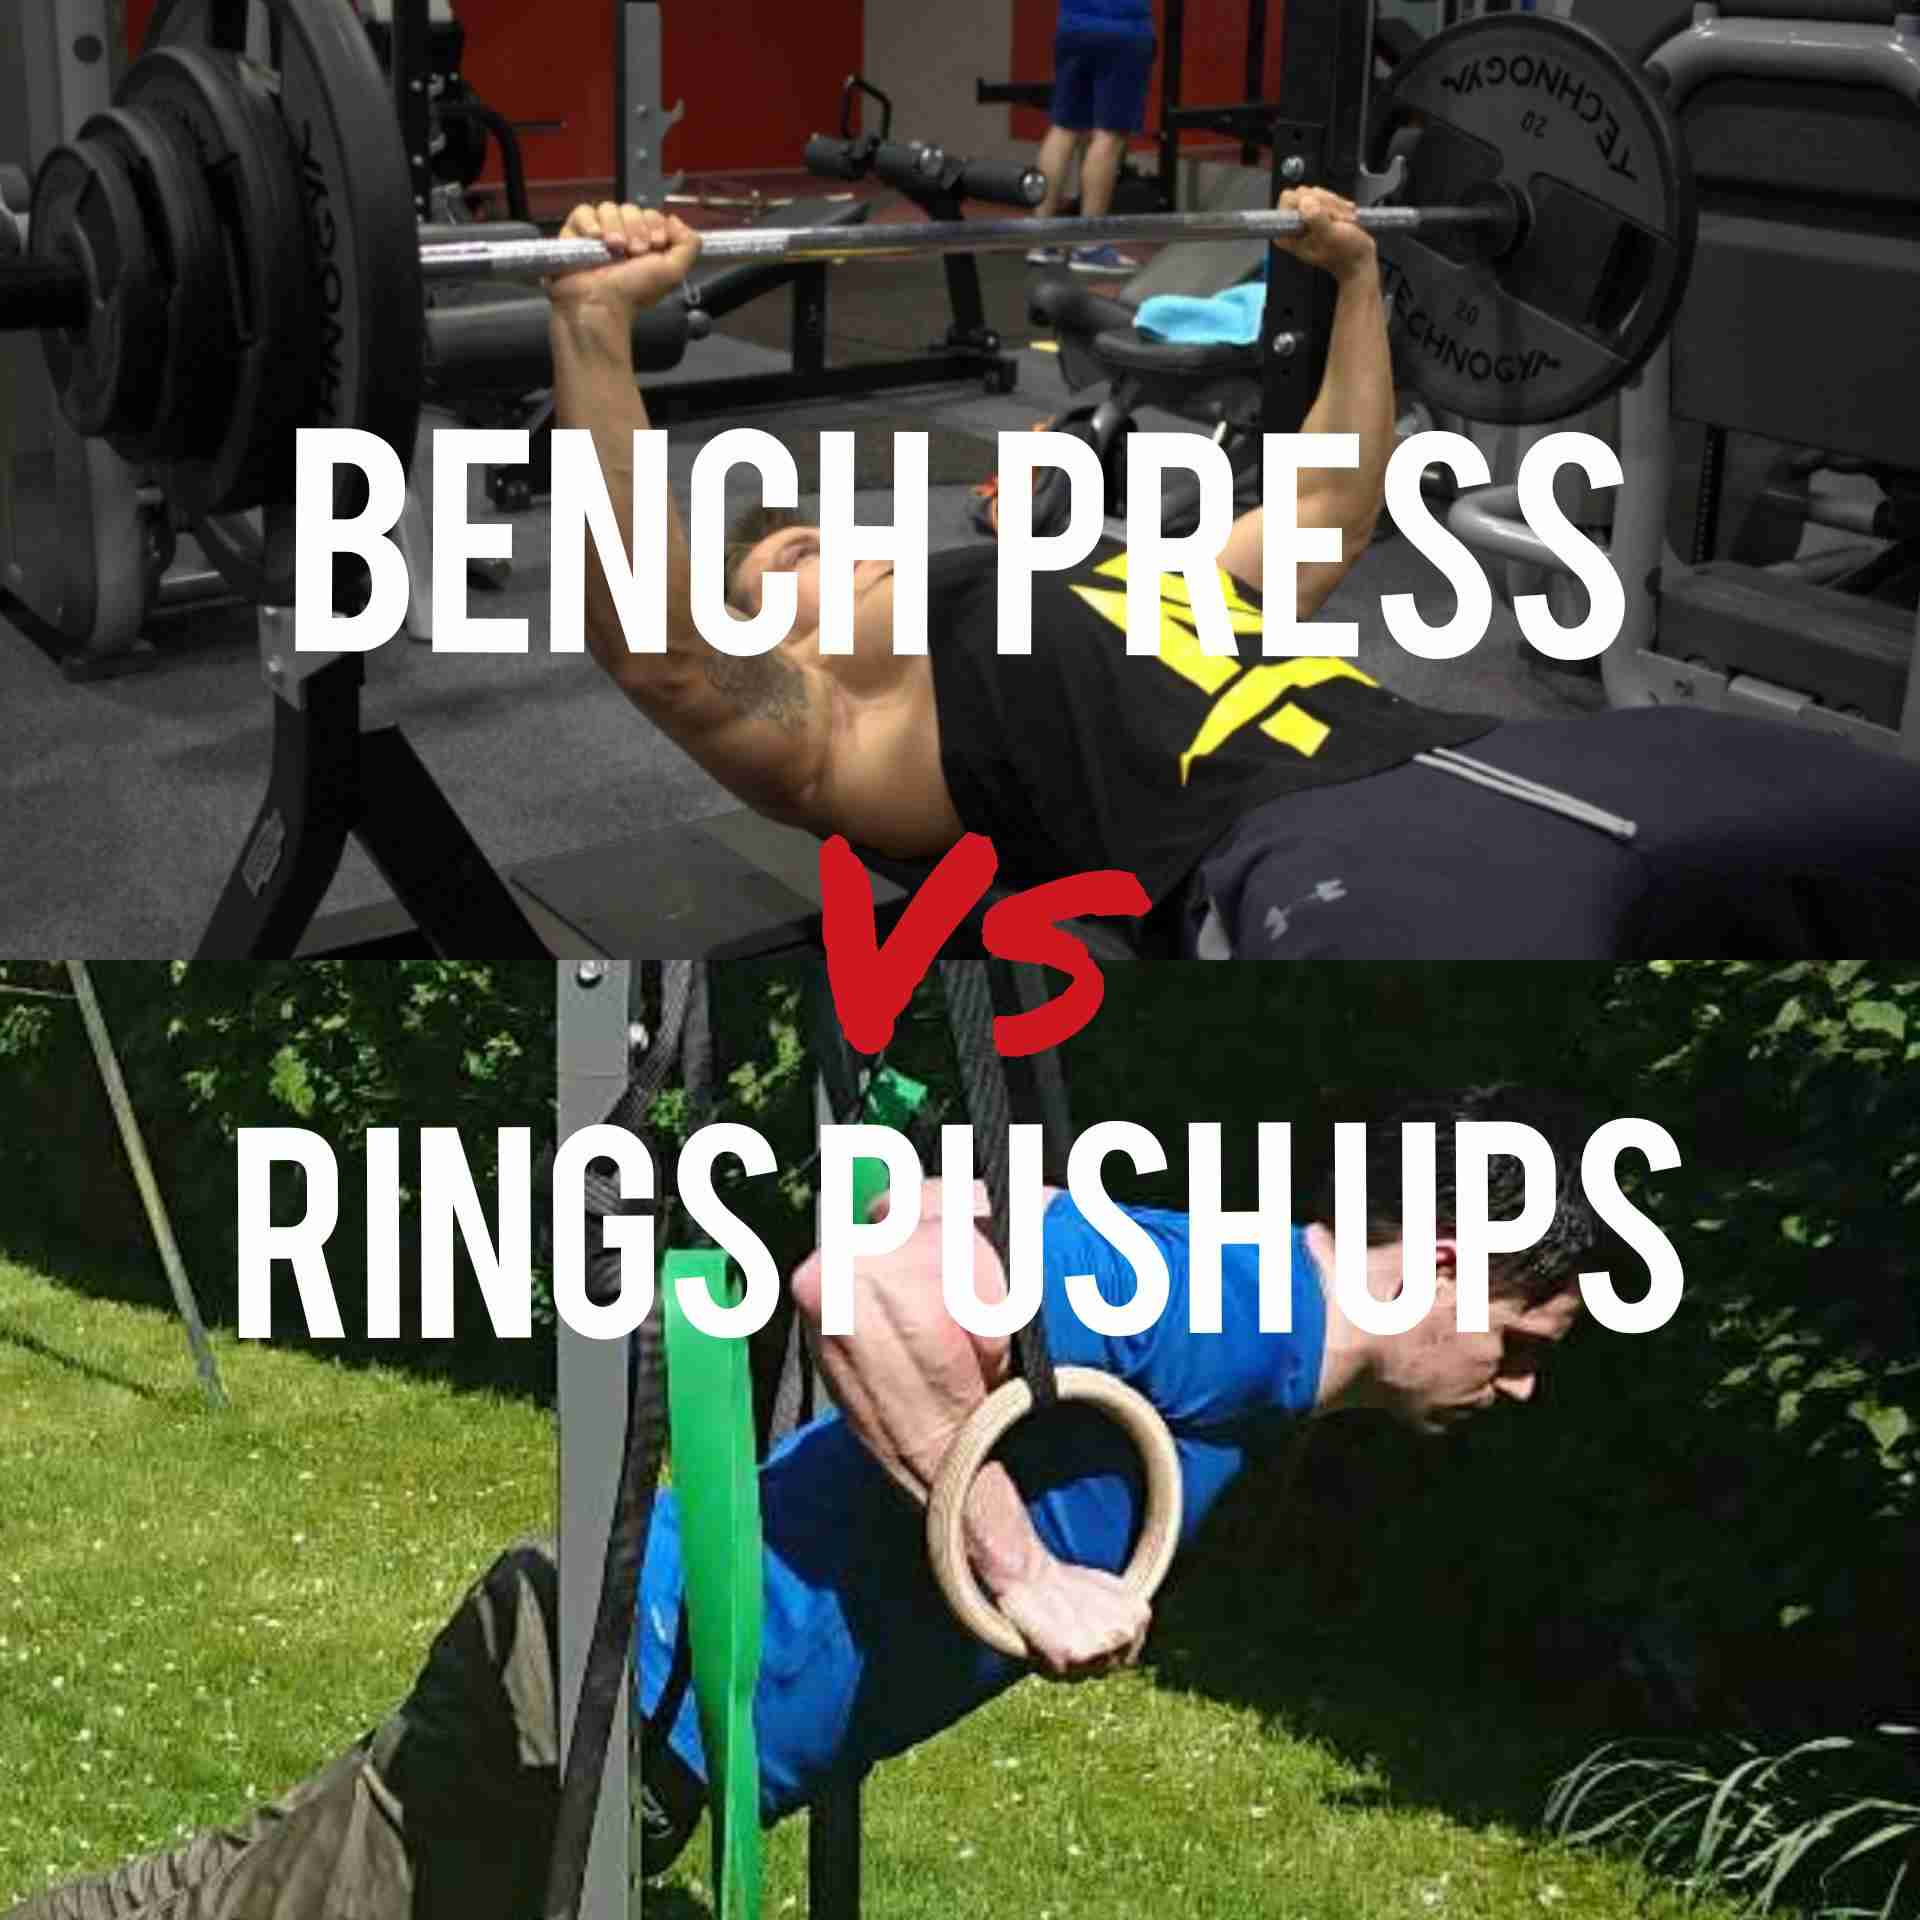 Ring Push Ups Vs Bench Press